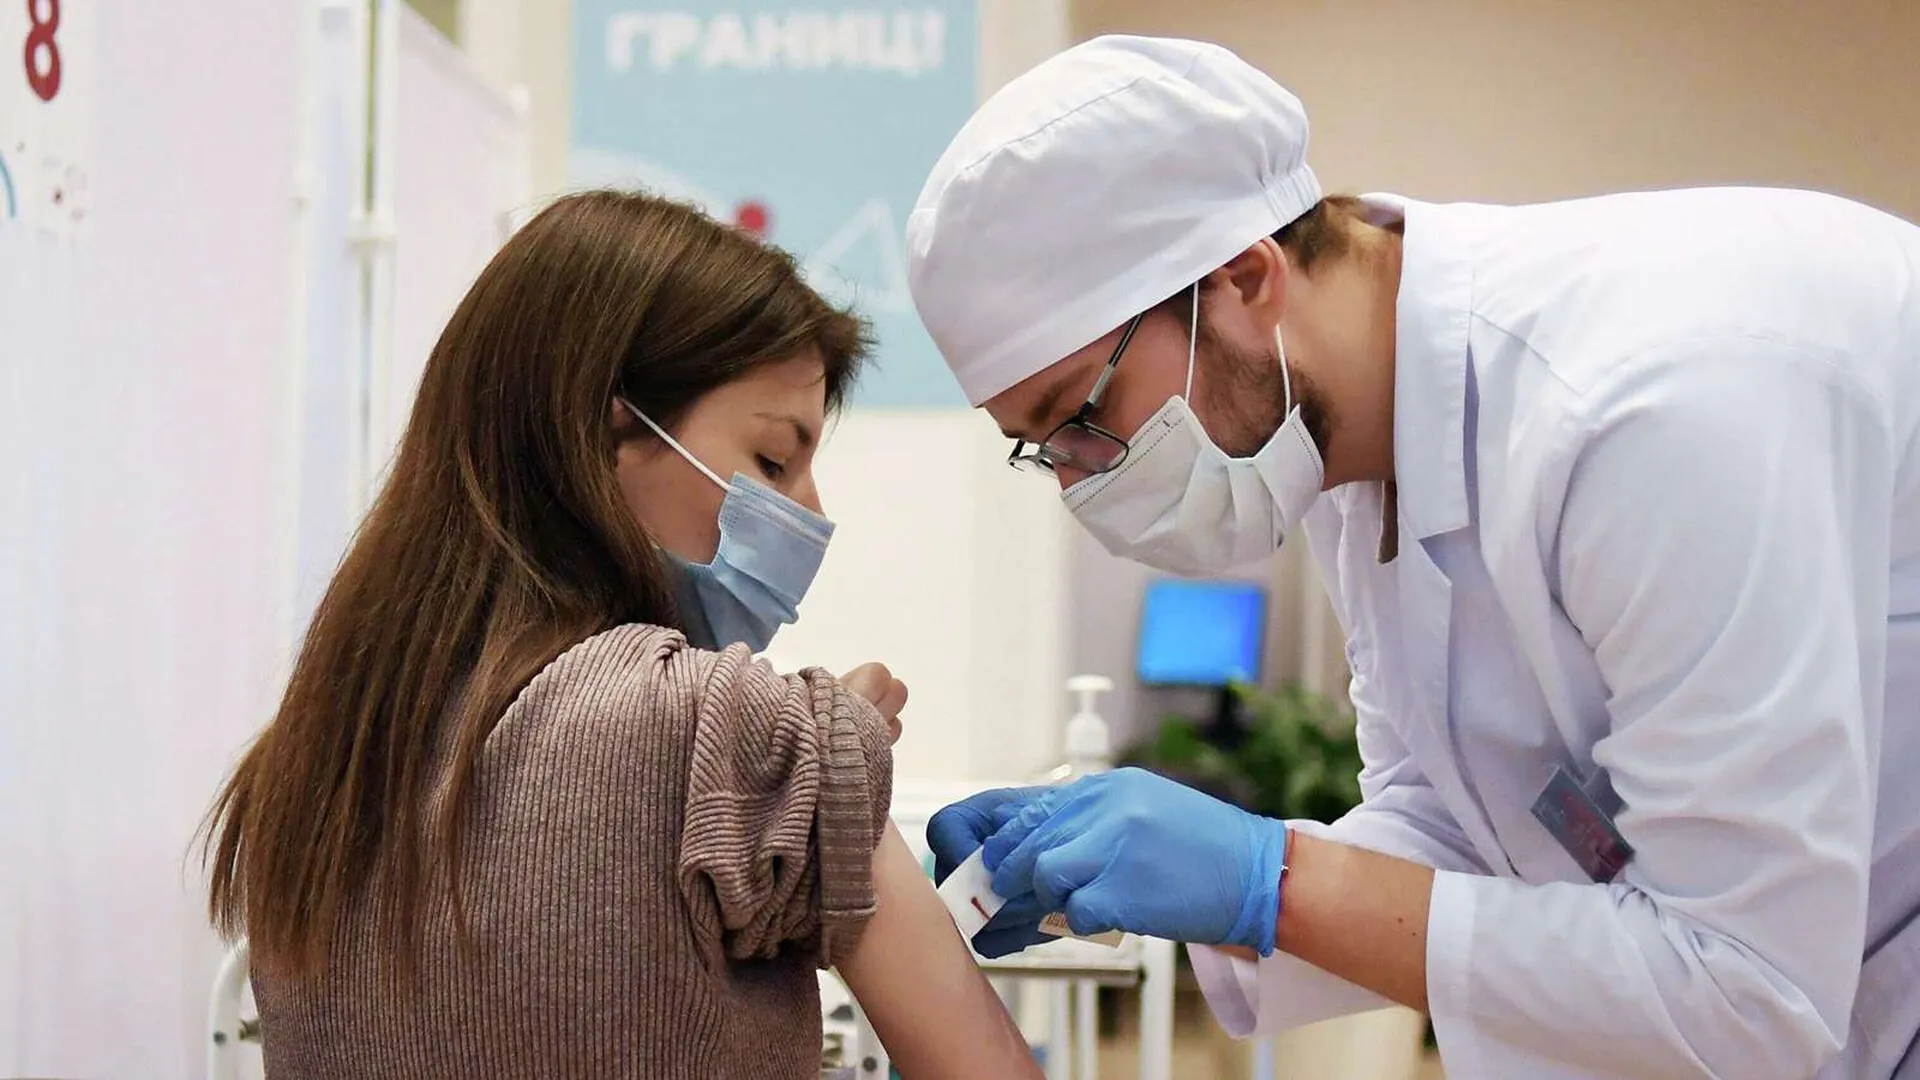 Бесплатная вакцинация подростков от коронавируса стартовала в Москве